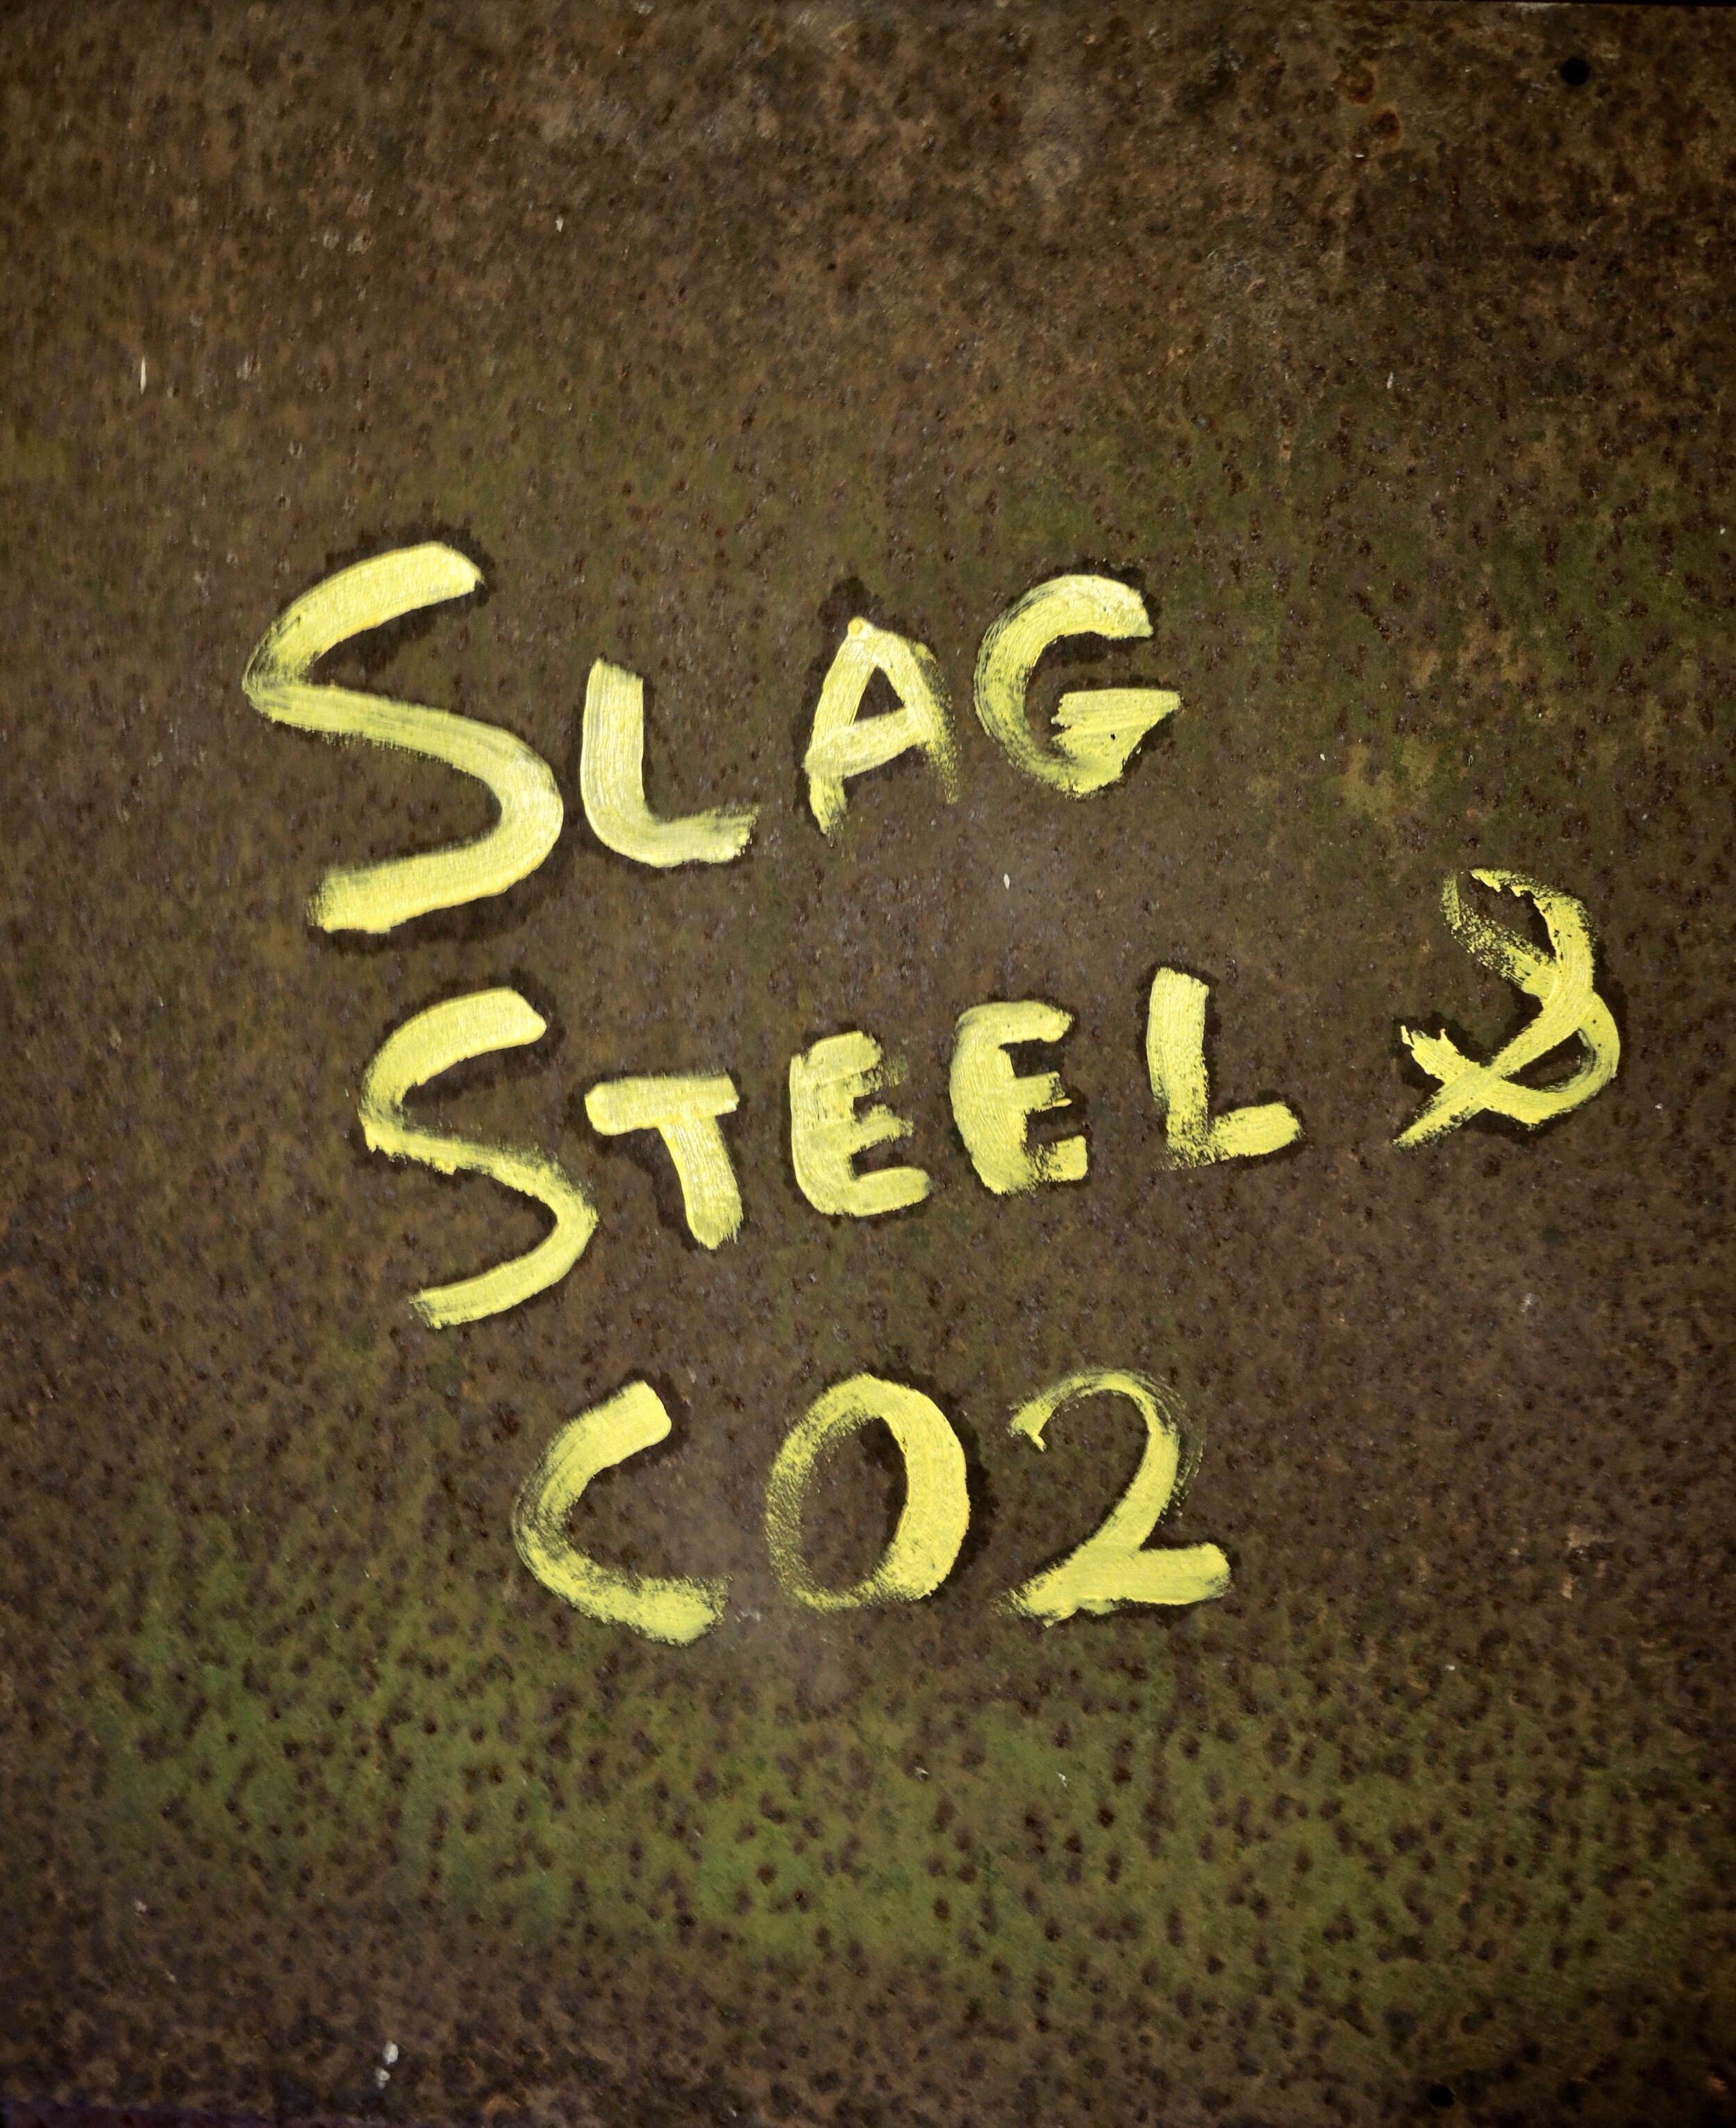 Slag Steel and CO2.jpeg